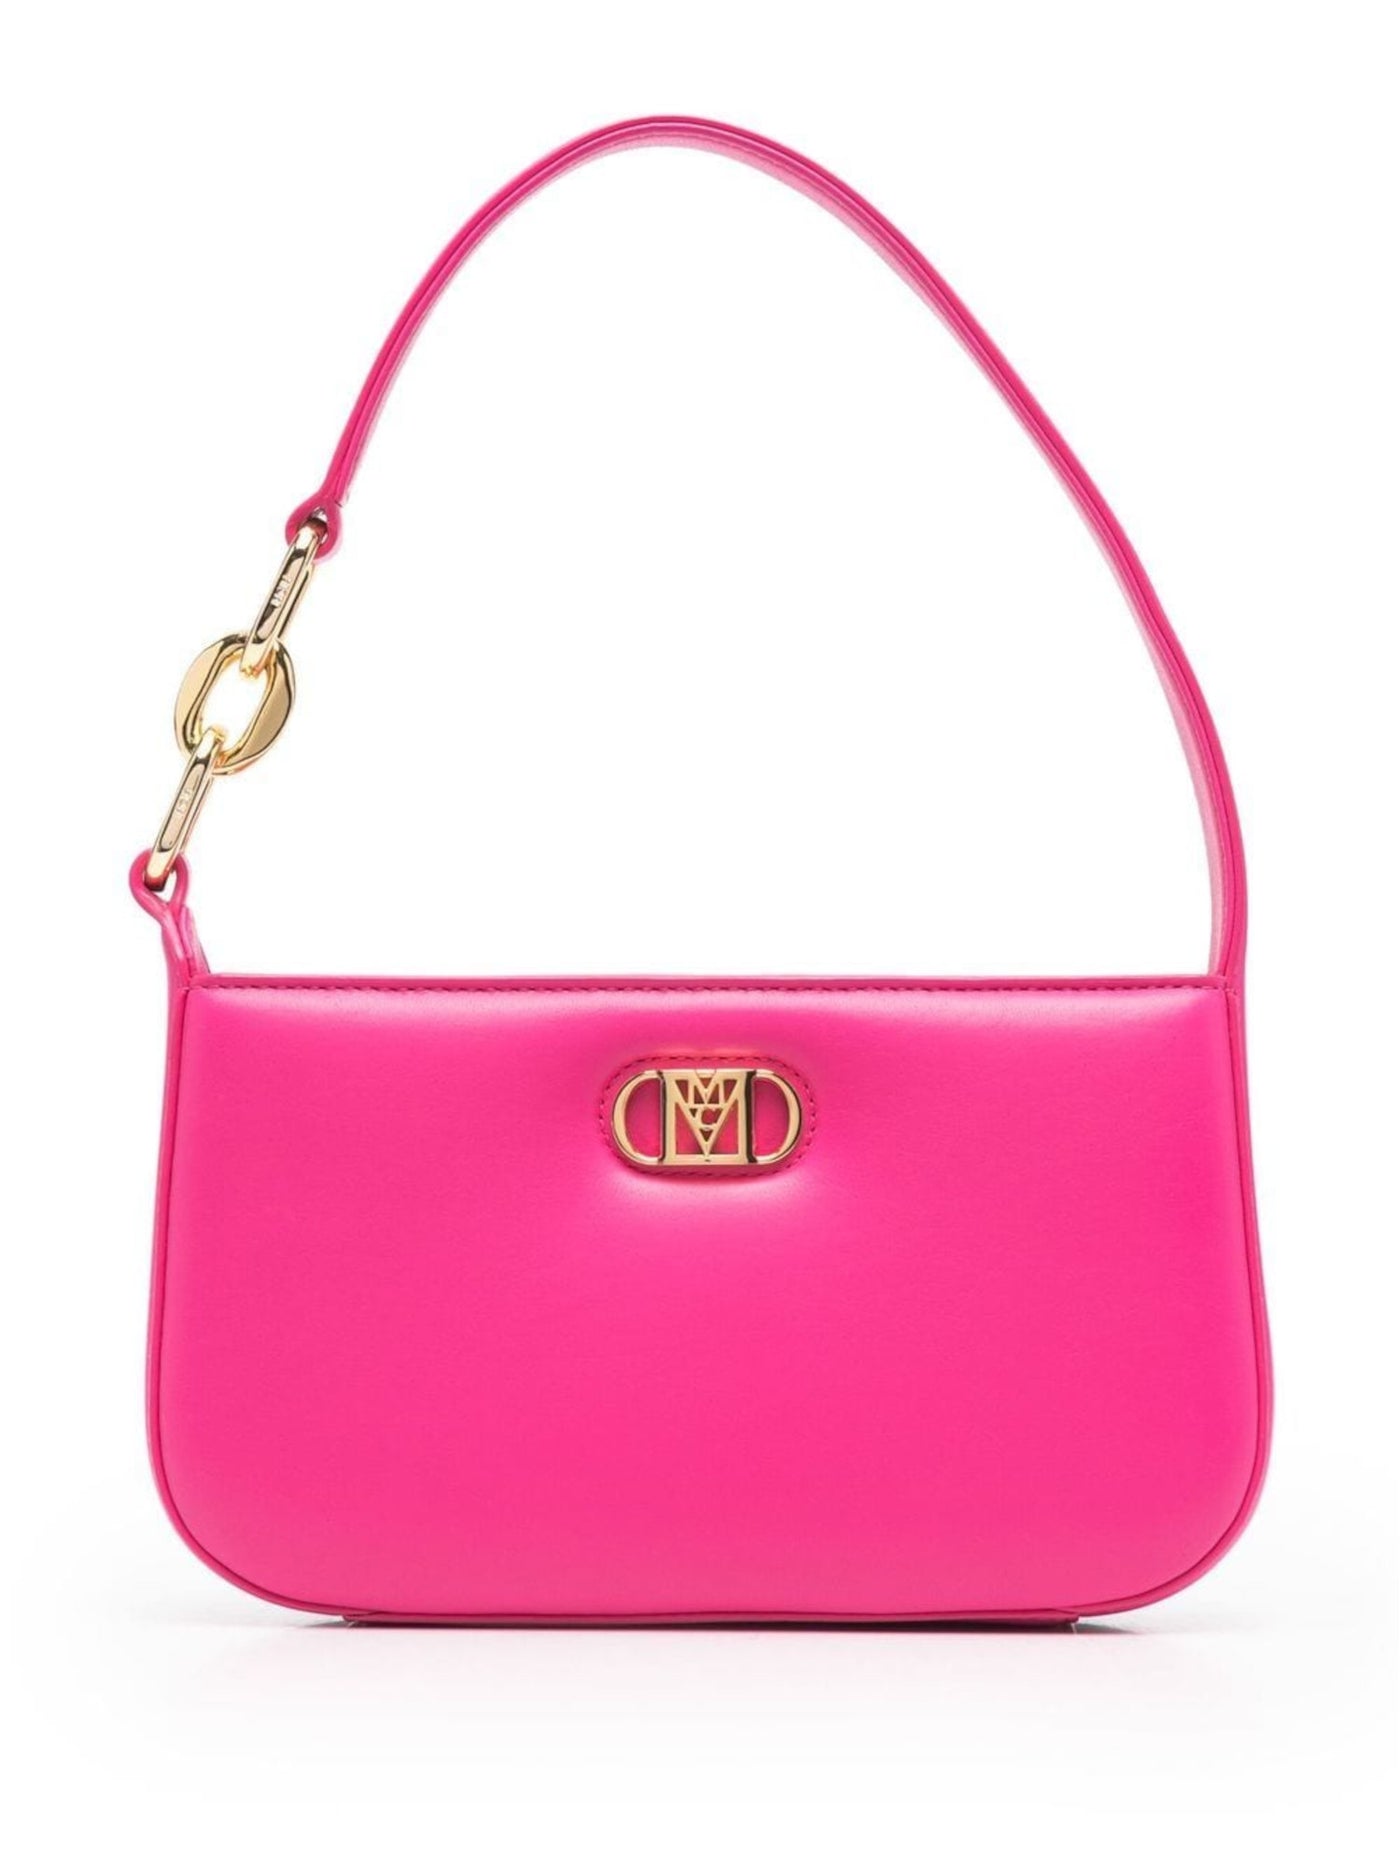 MCM Women's Pink Solid Leather Single Strap Shoulder Bag